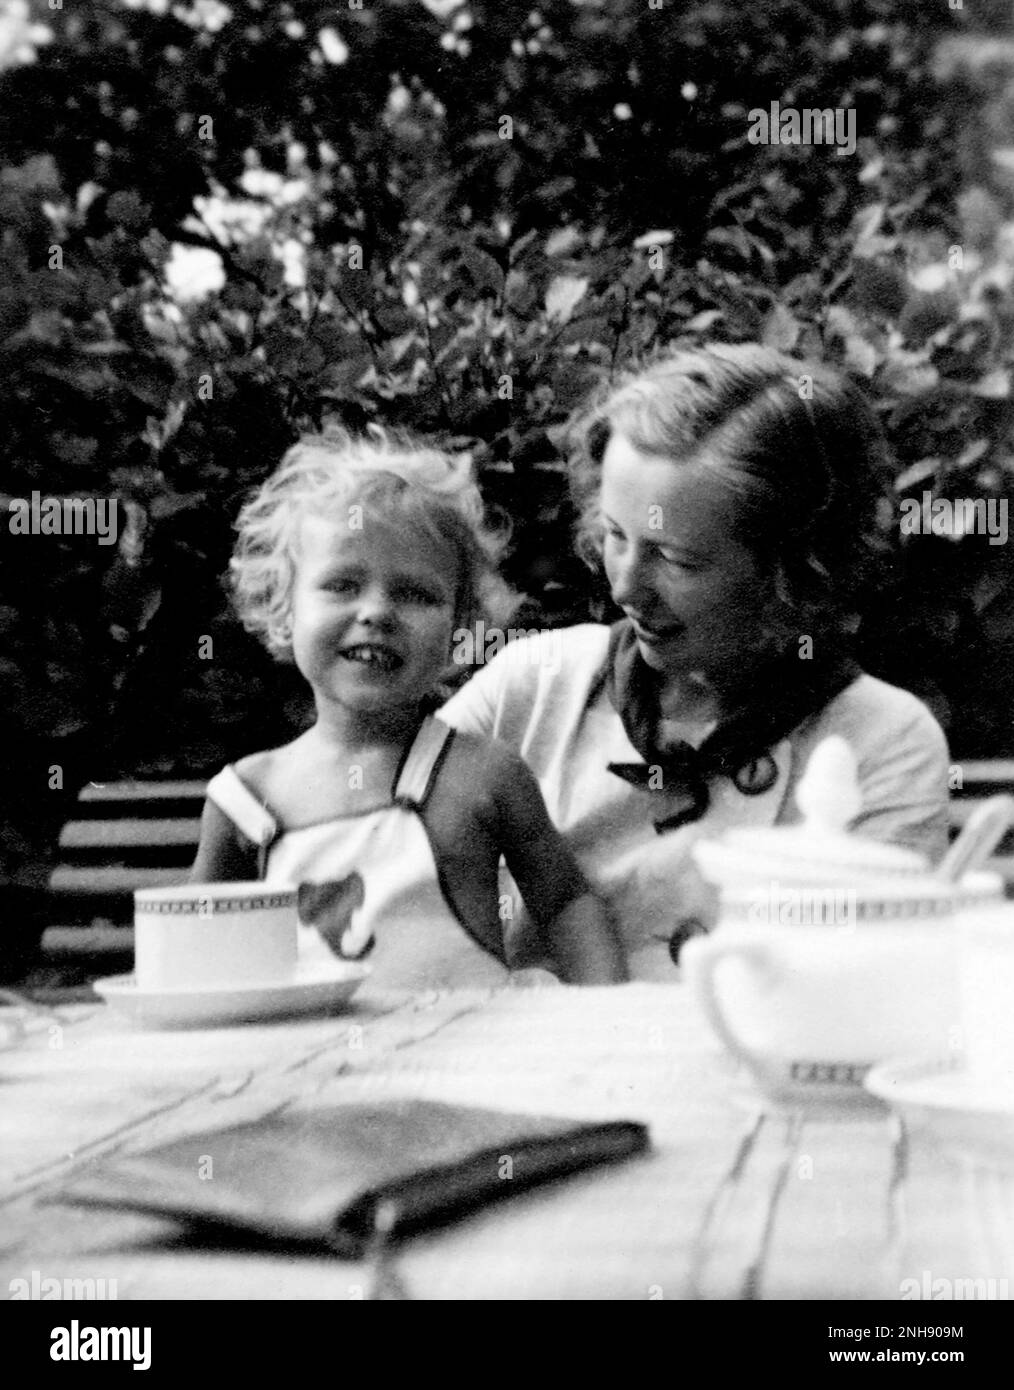 Maria Goeppert-Mayer (1906-1972) mit Tochter Marianne, Sommer 1935. Mayer war ein in Deutschland geborener amerikanischer Theoretischer Physiker und Nobelpreisträger in Physik, der das nukleare Shell-Modell des Atomkerns vorschlug. Sie war die zweite Frau, die nach Marie Curie den Nobelpreis für Physik gewann. Stockfoto